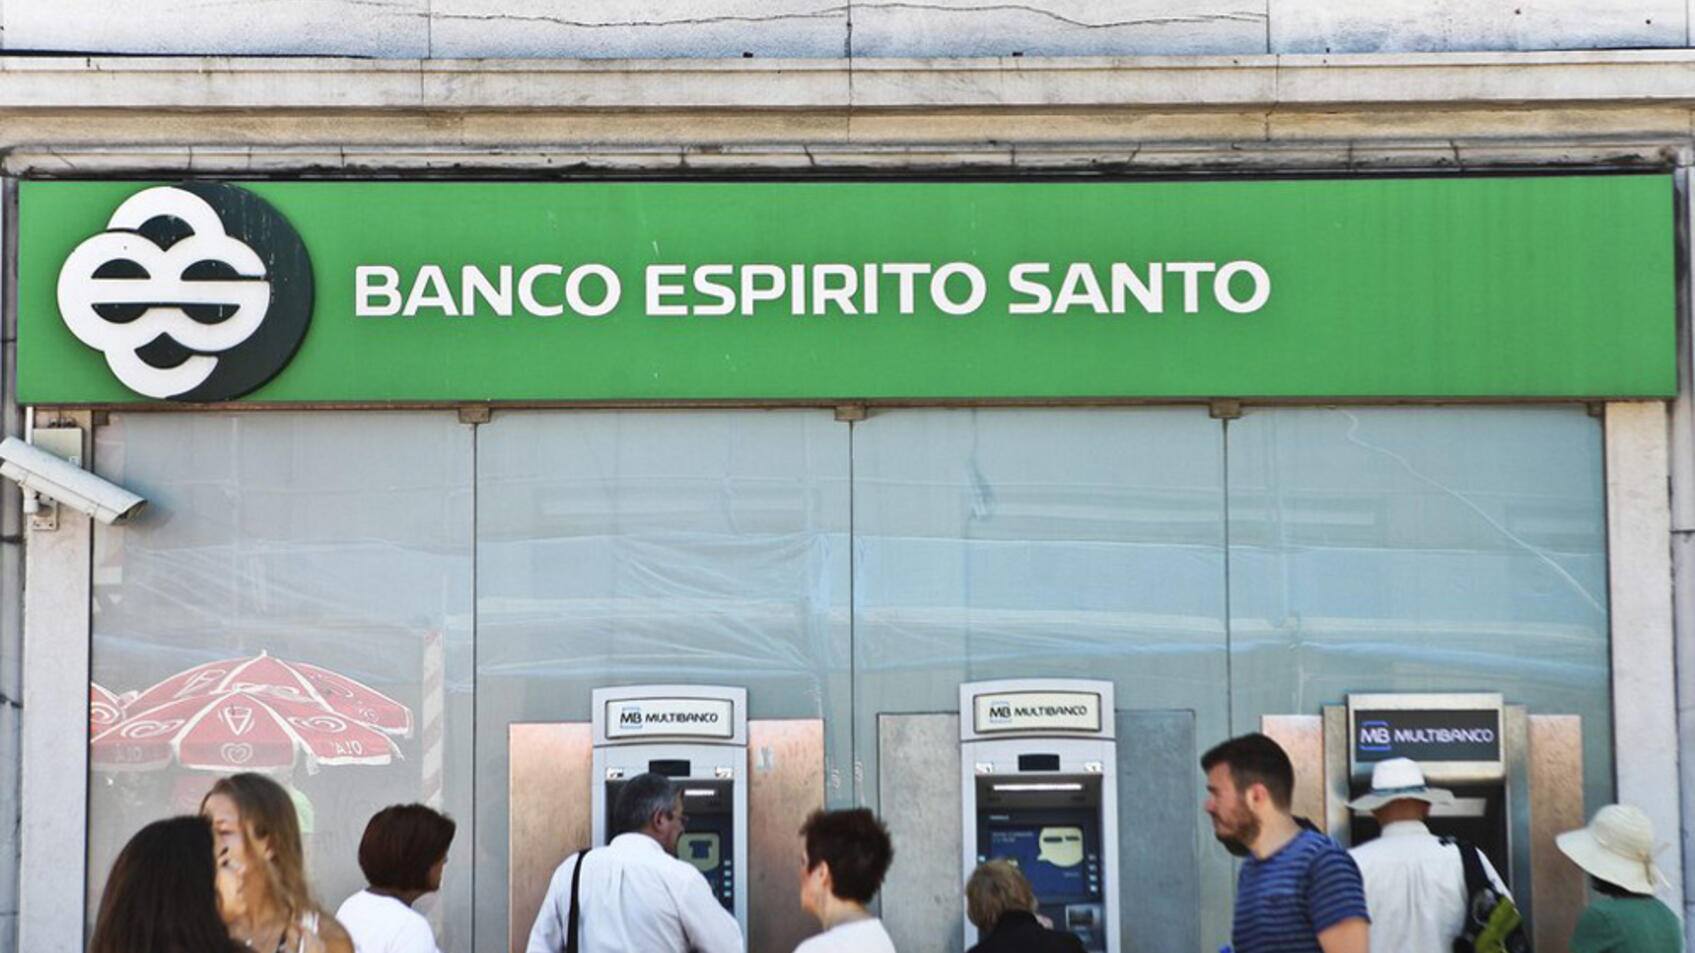 Firma der Bankiersfamilie Espirito sucht Gläubigerschutz